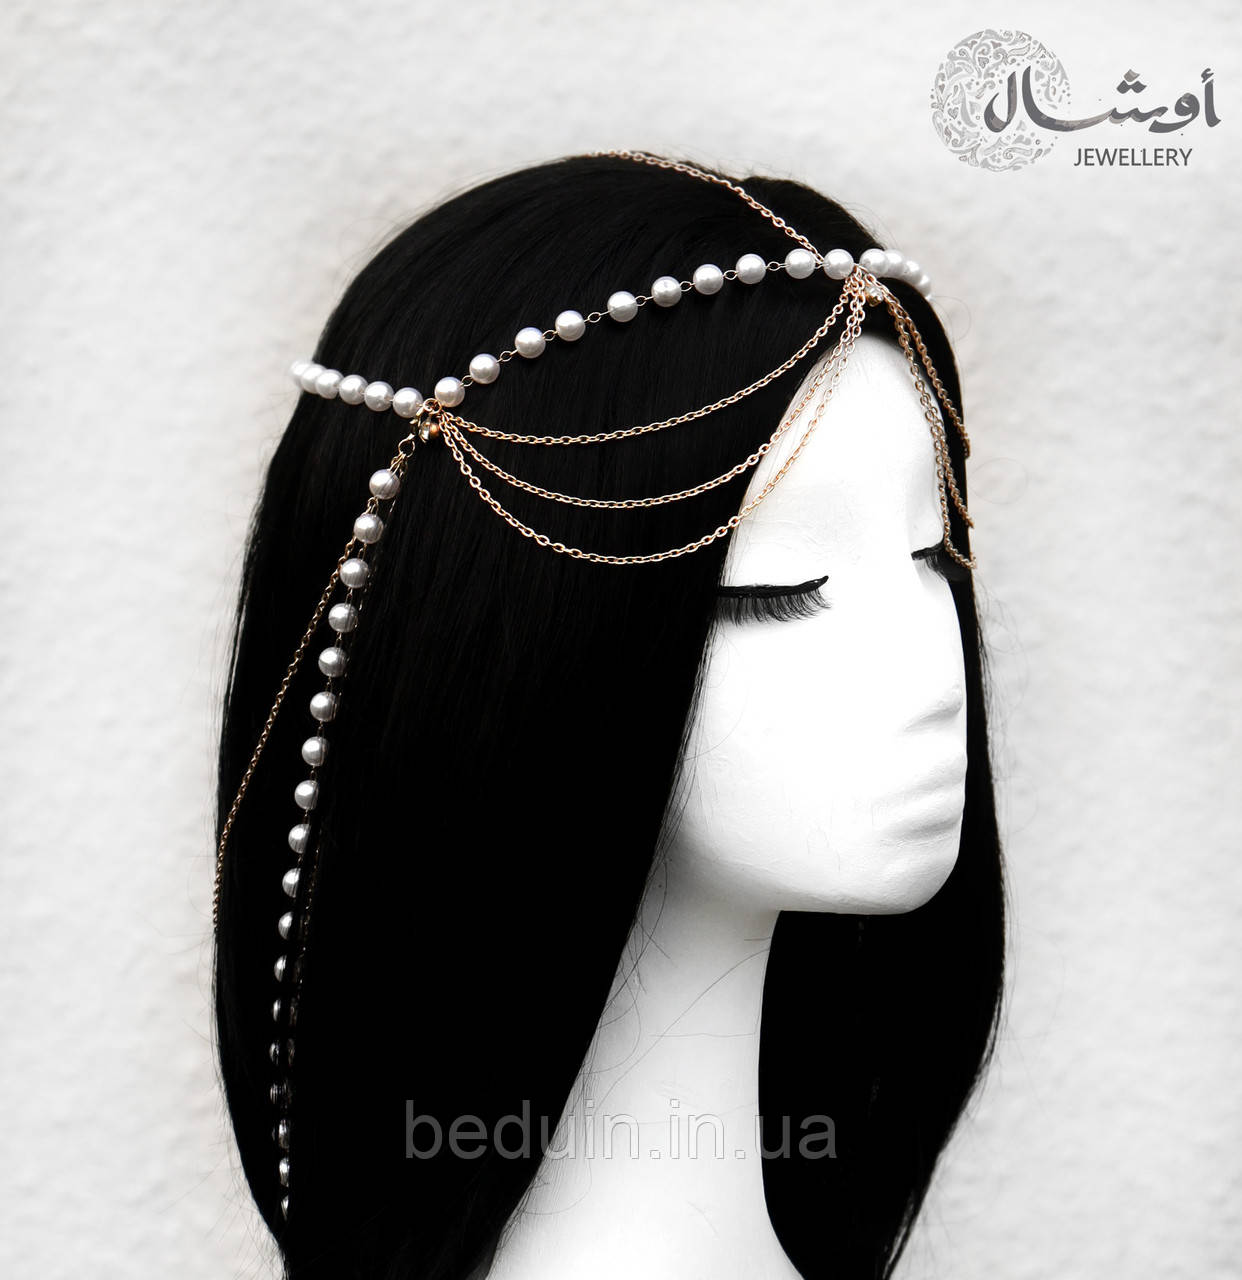 Подовжена прикраса на волосся Єгипетська Тіара на голову "Імператриця" — на фотосесію Aushal Jewellery